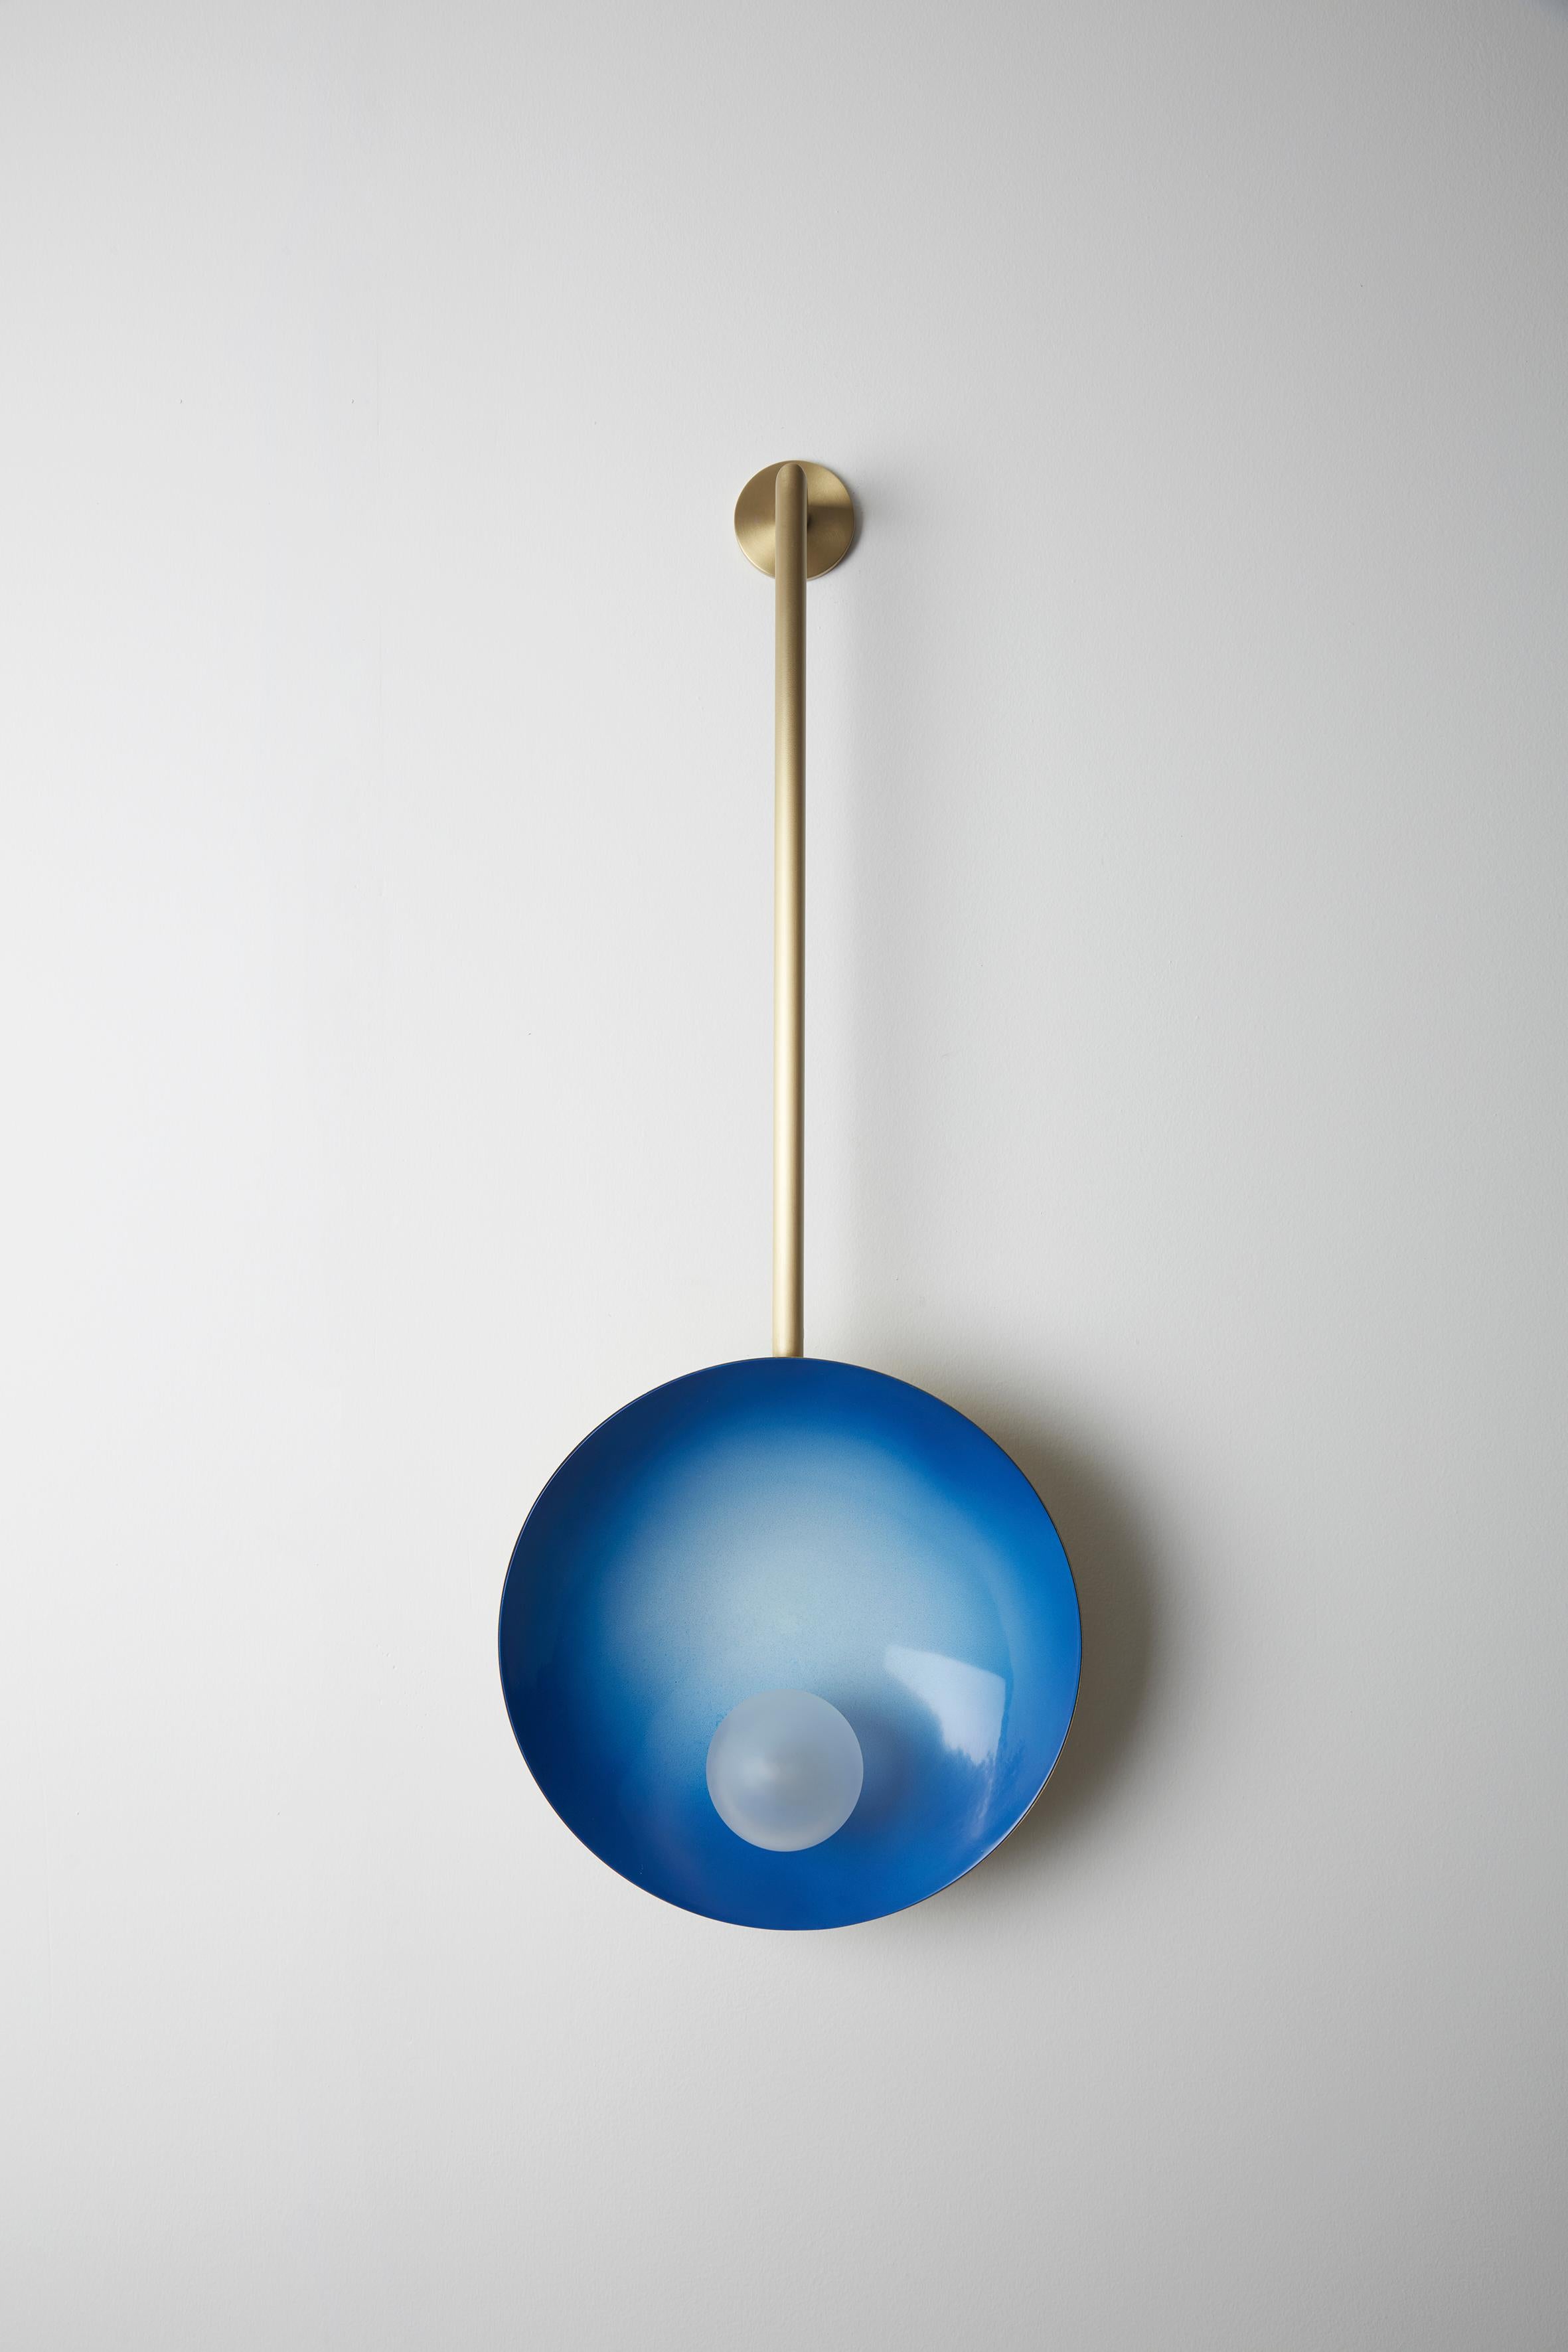 Oyster Wandhalterung elektrisch blau, Carla Baz
Abmessungen: ø 30 x H 78 x T 14 cm
Gewicht: 2 kg
MATERIAL: Messing, geblasene satinierte Glaskugeln

Oyster ist eine Serie von skulpturalen Leuchten, die 2016 entwickelt wurde. Wir wollten die